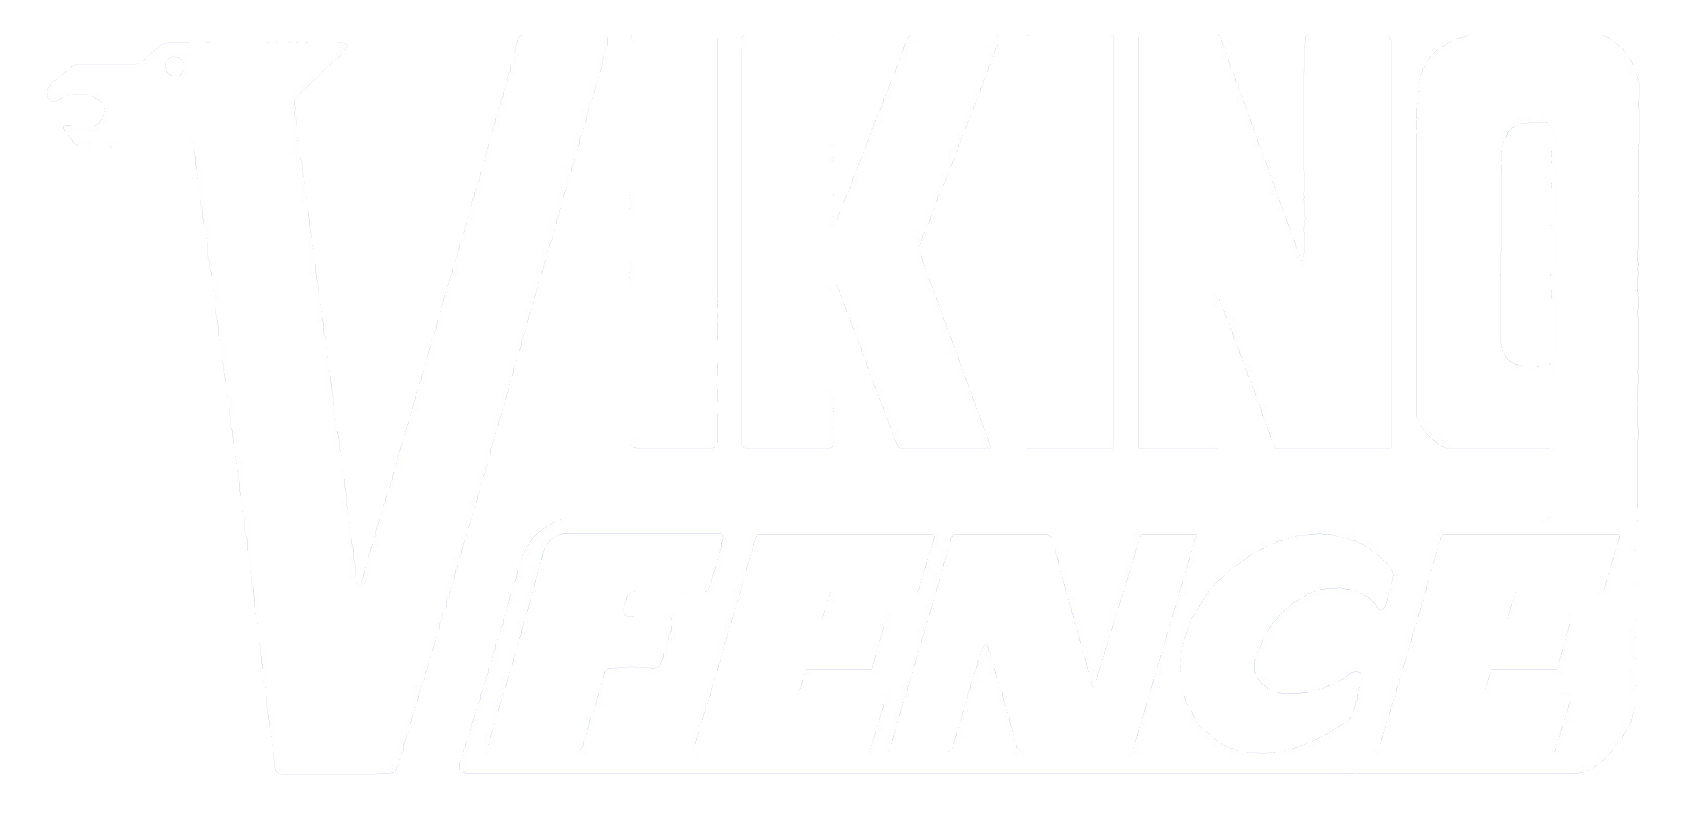 Viking Fence